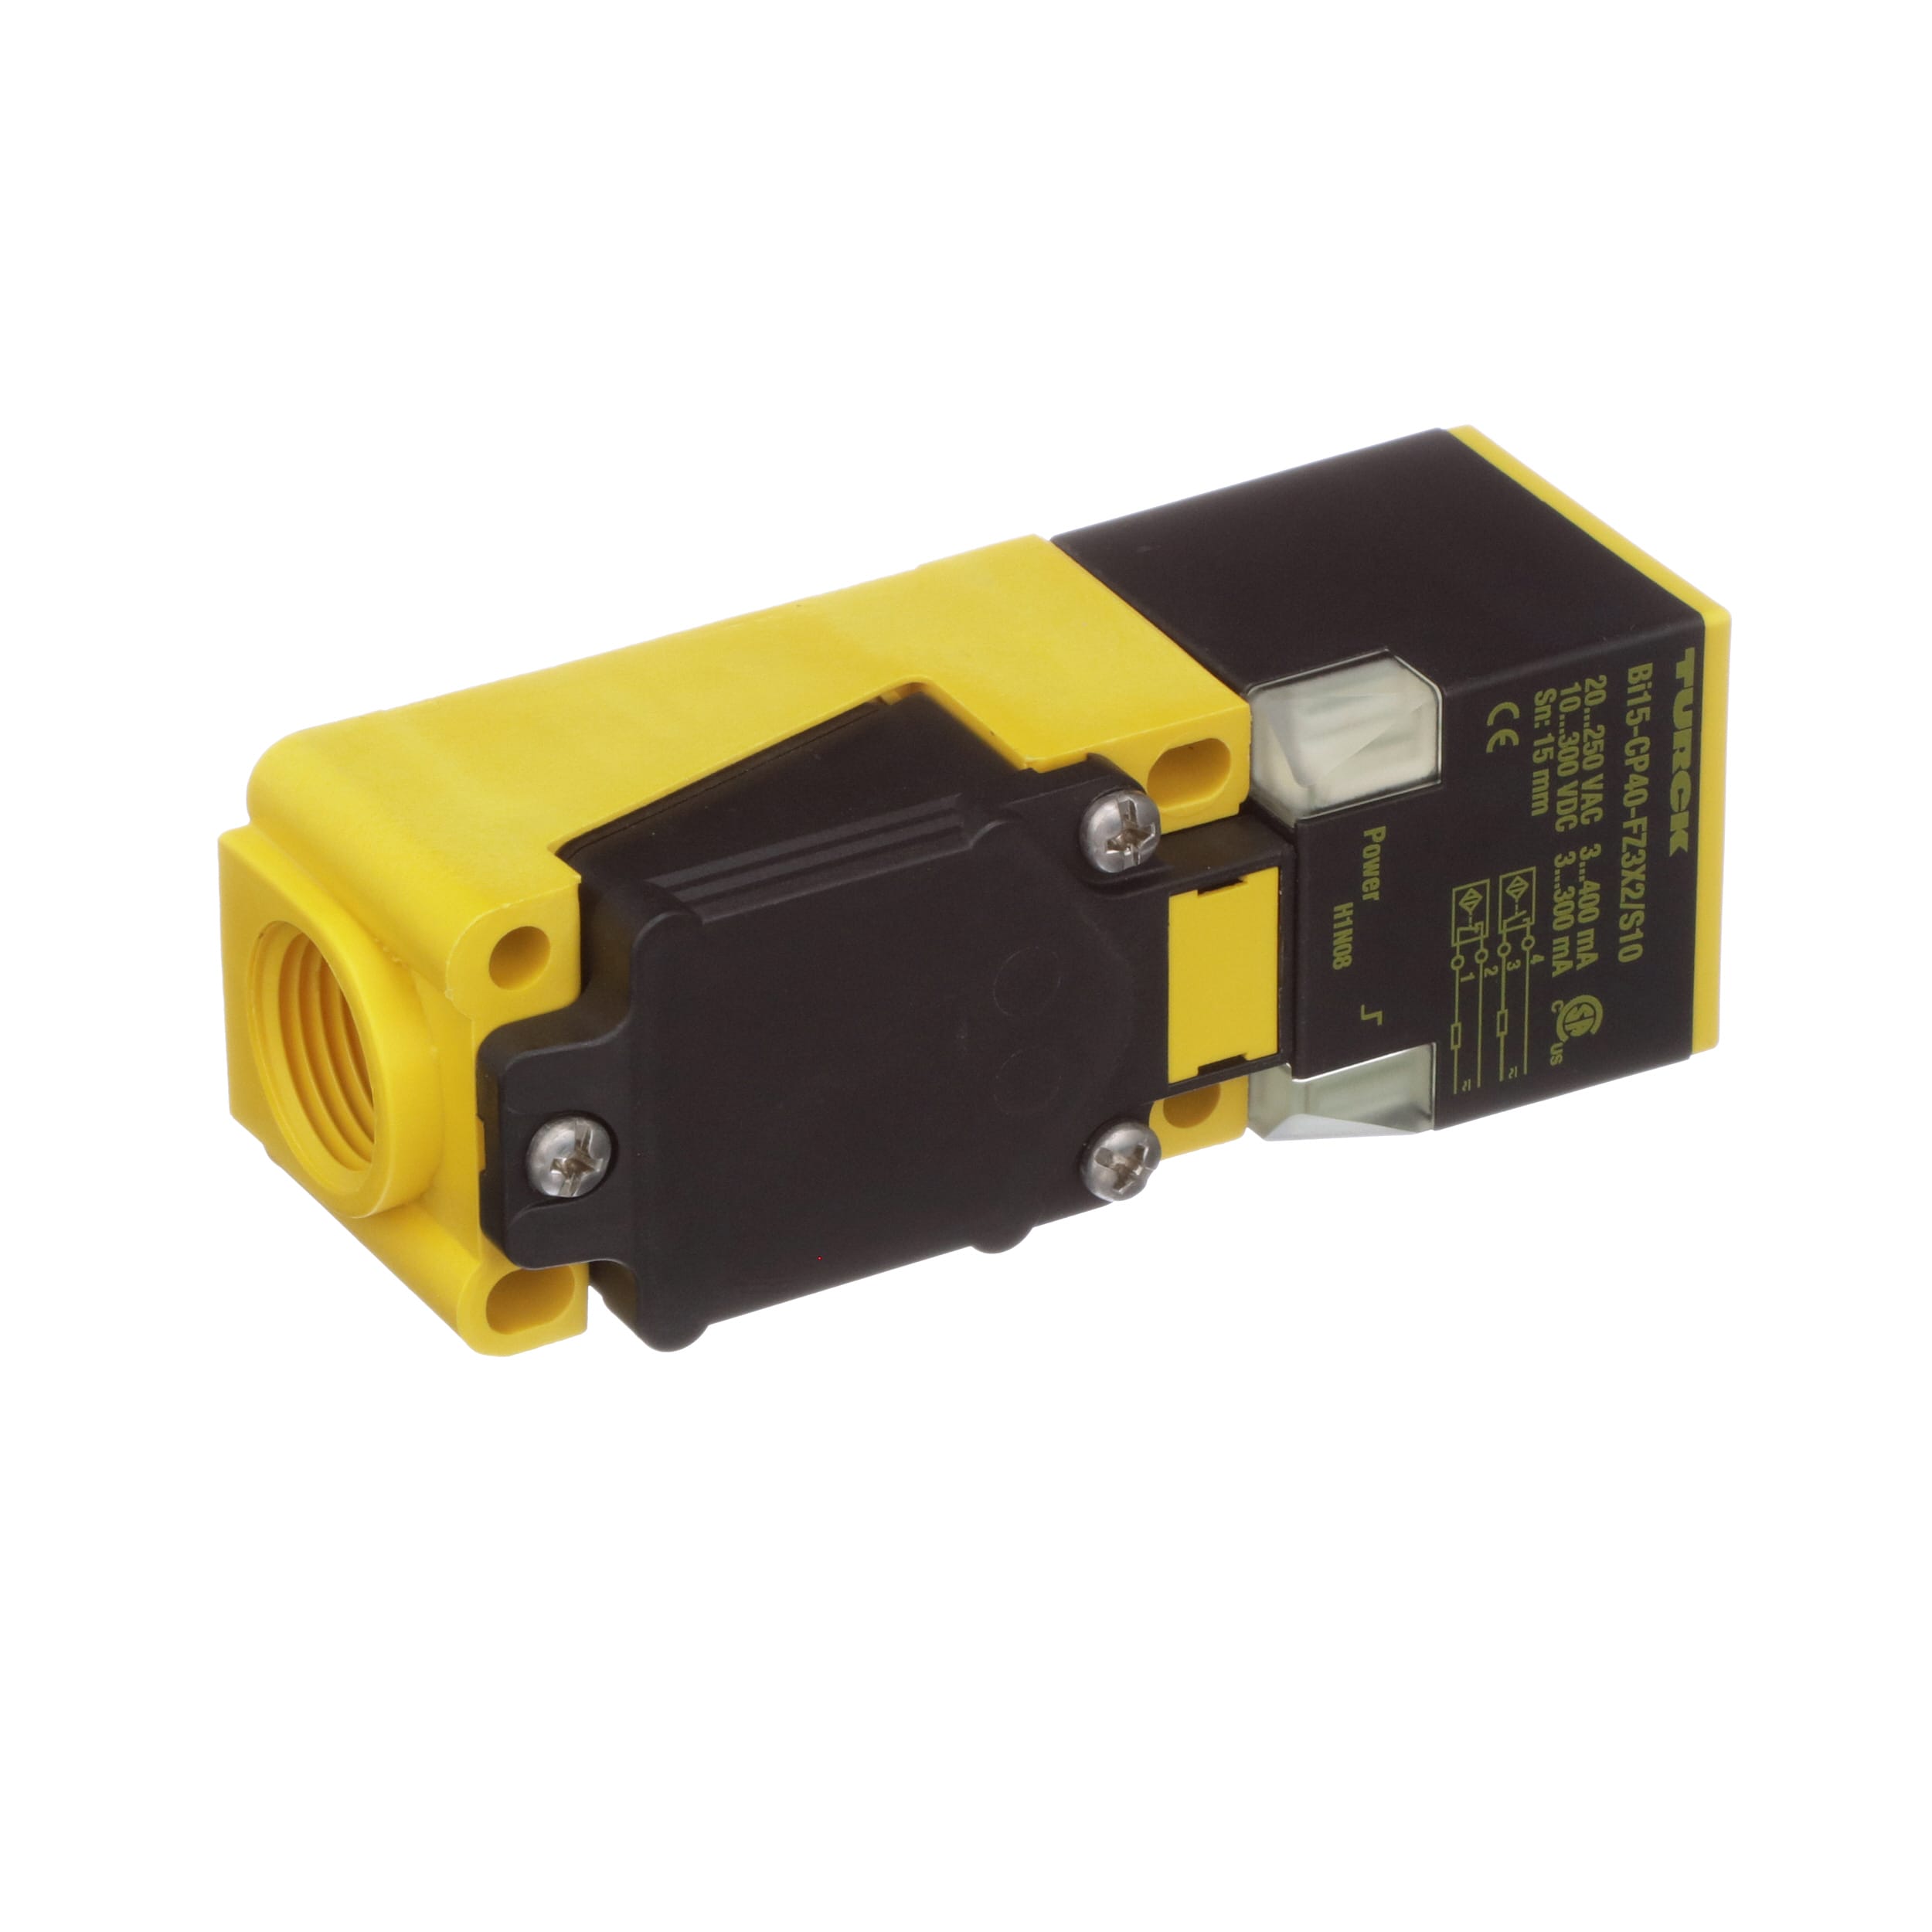 Turck Bi15-cp40-fz3x2 S100 Proximity Sensor Switch for sale online